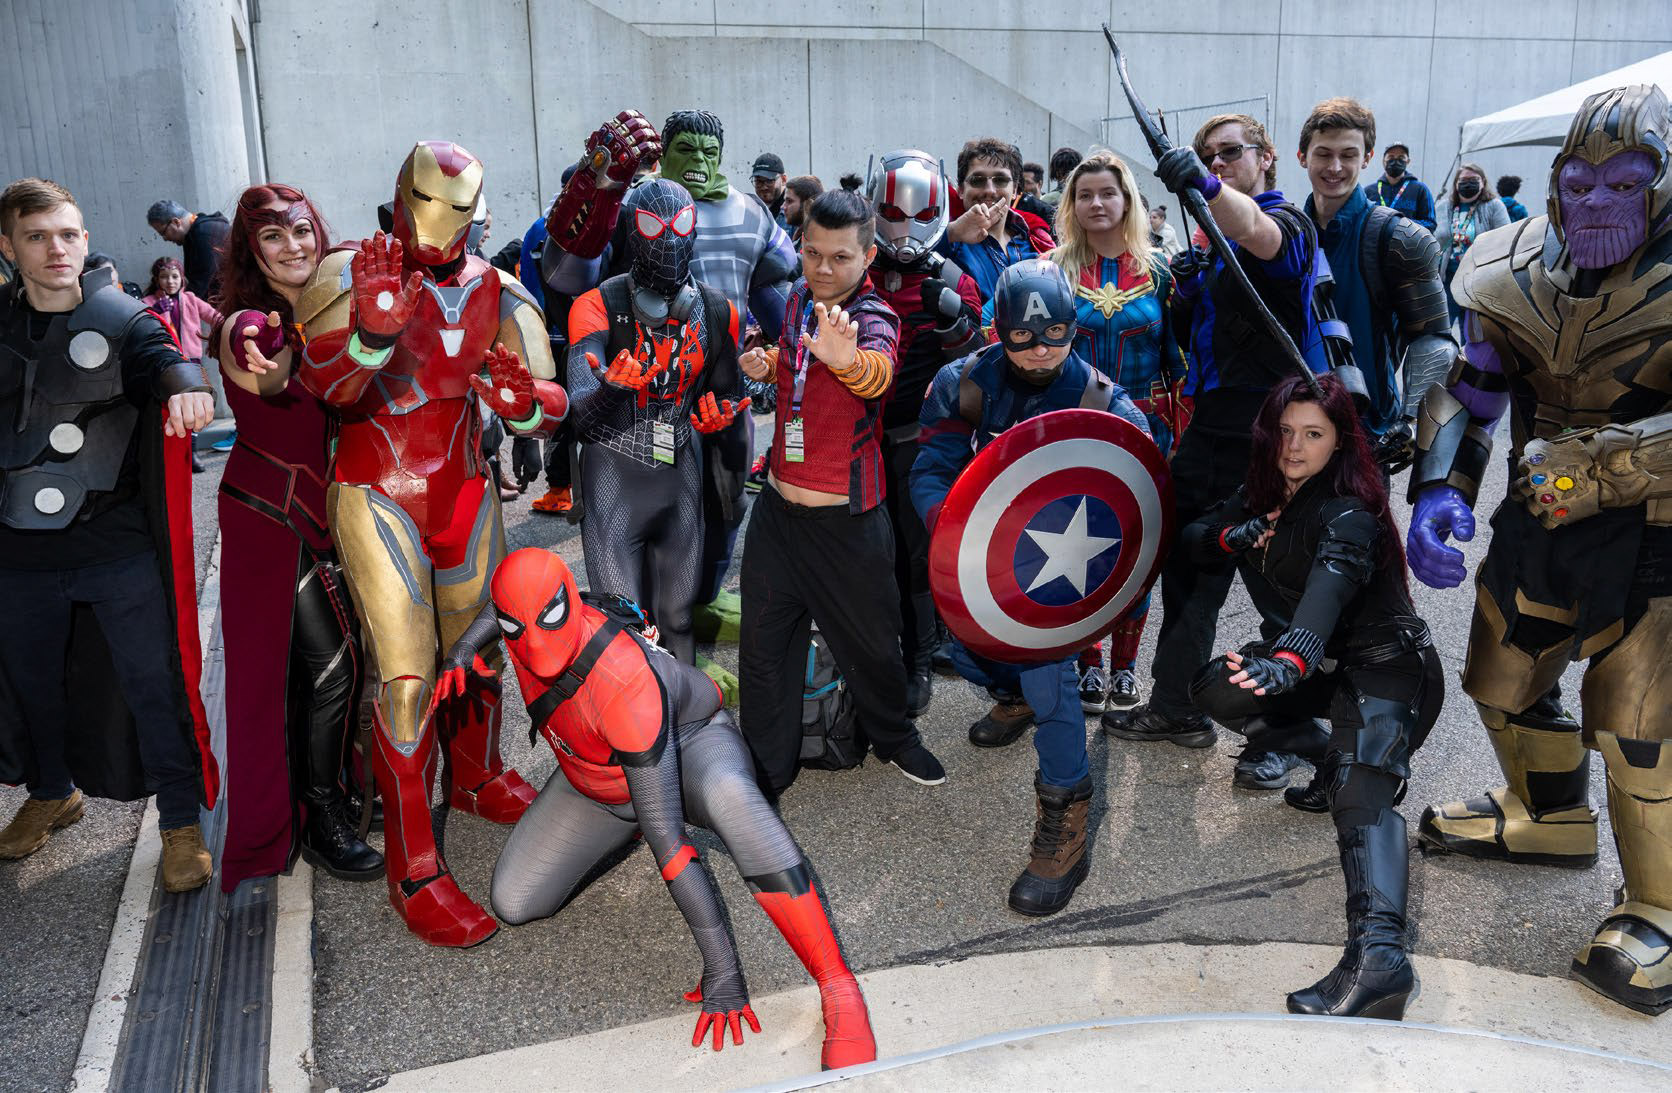 Group of people dressed up as superheroes